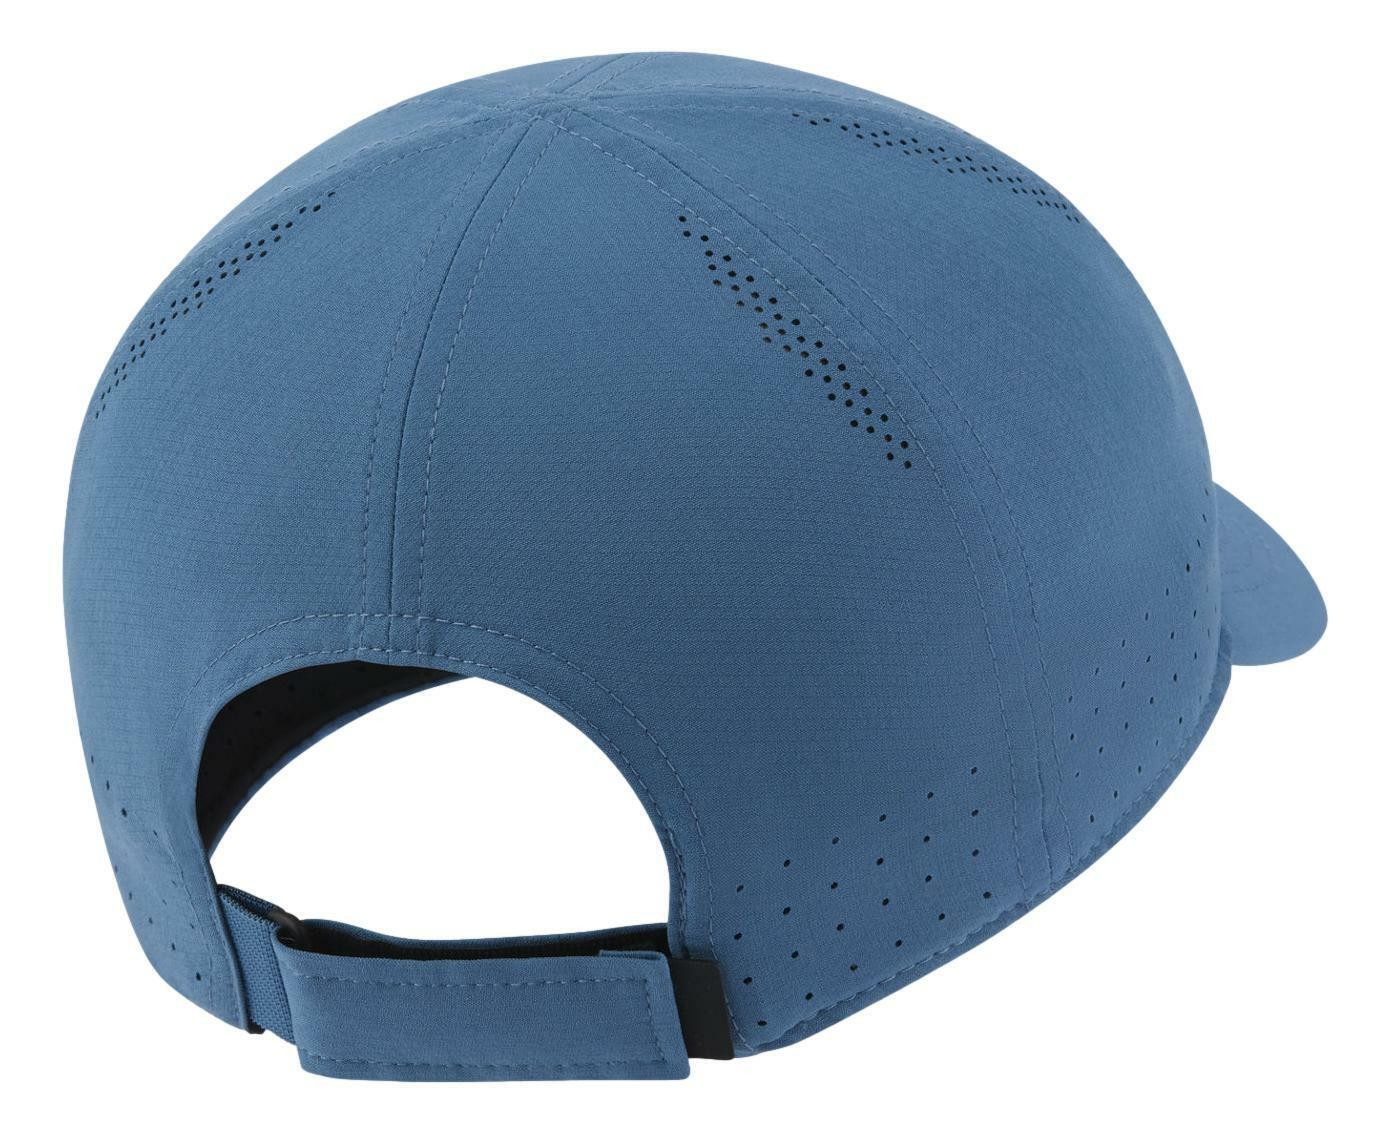 Теннисная кепка Nike Aerobill Dri-Fit Advantage Cap rift blue